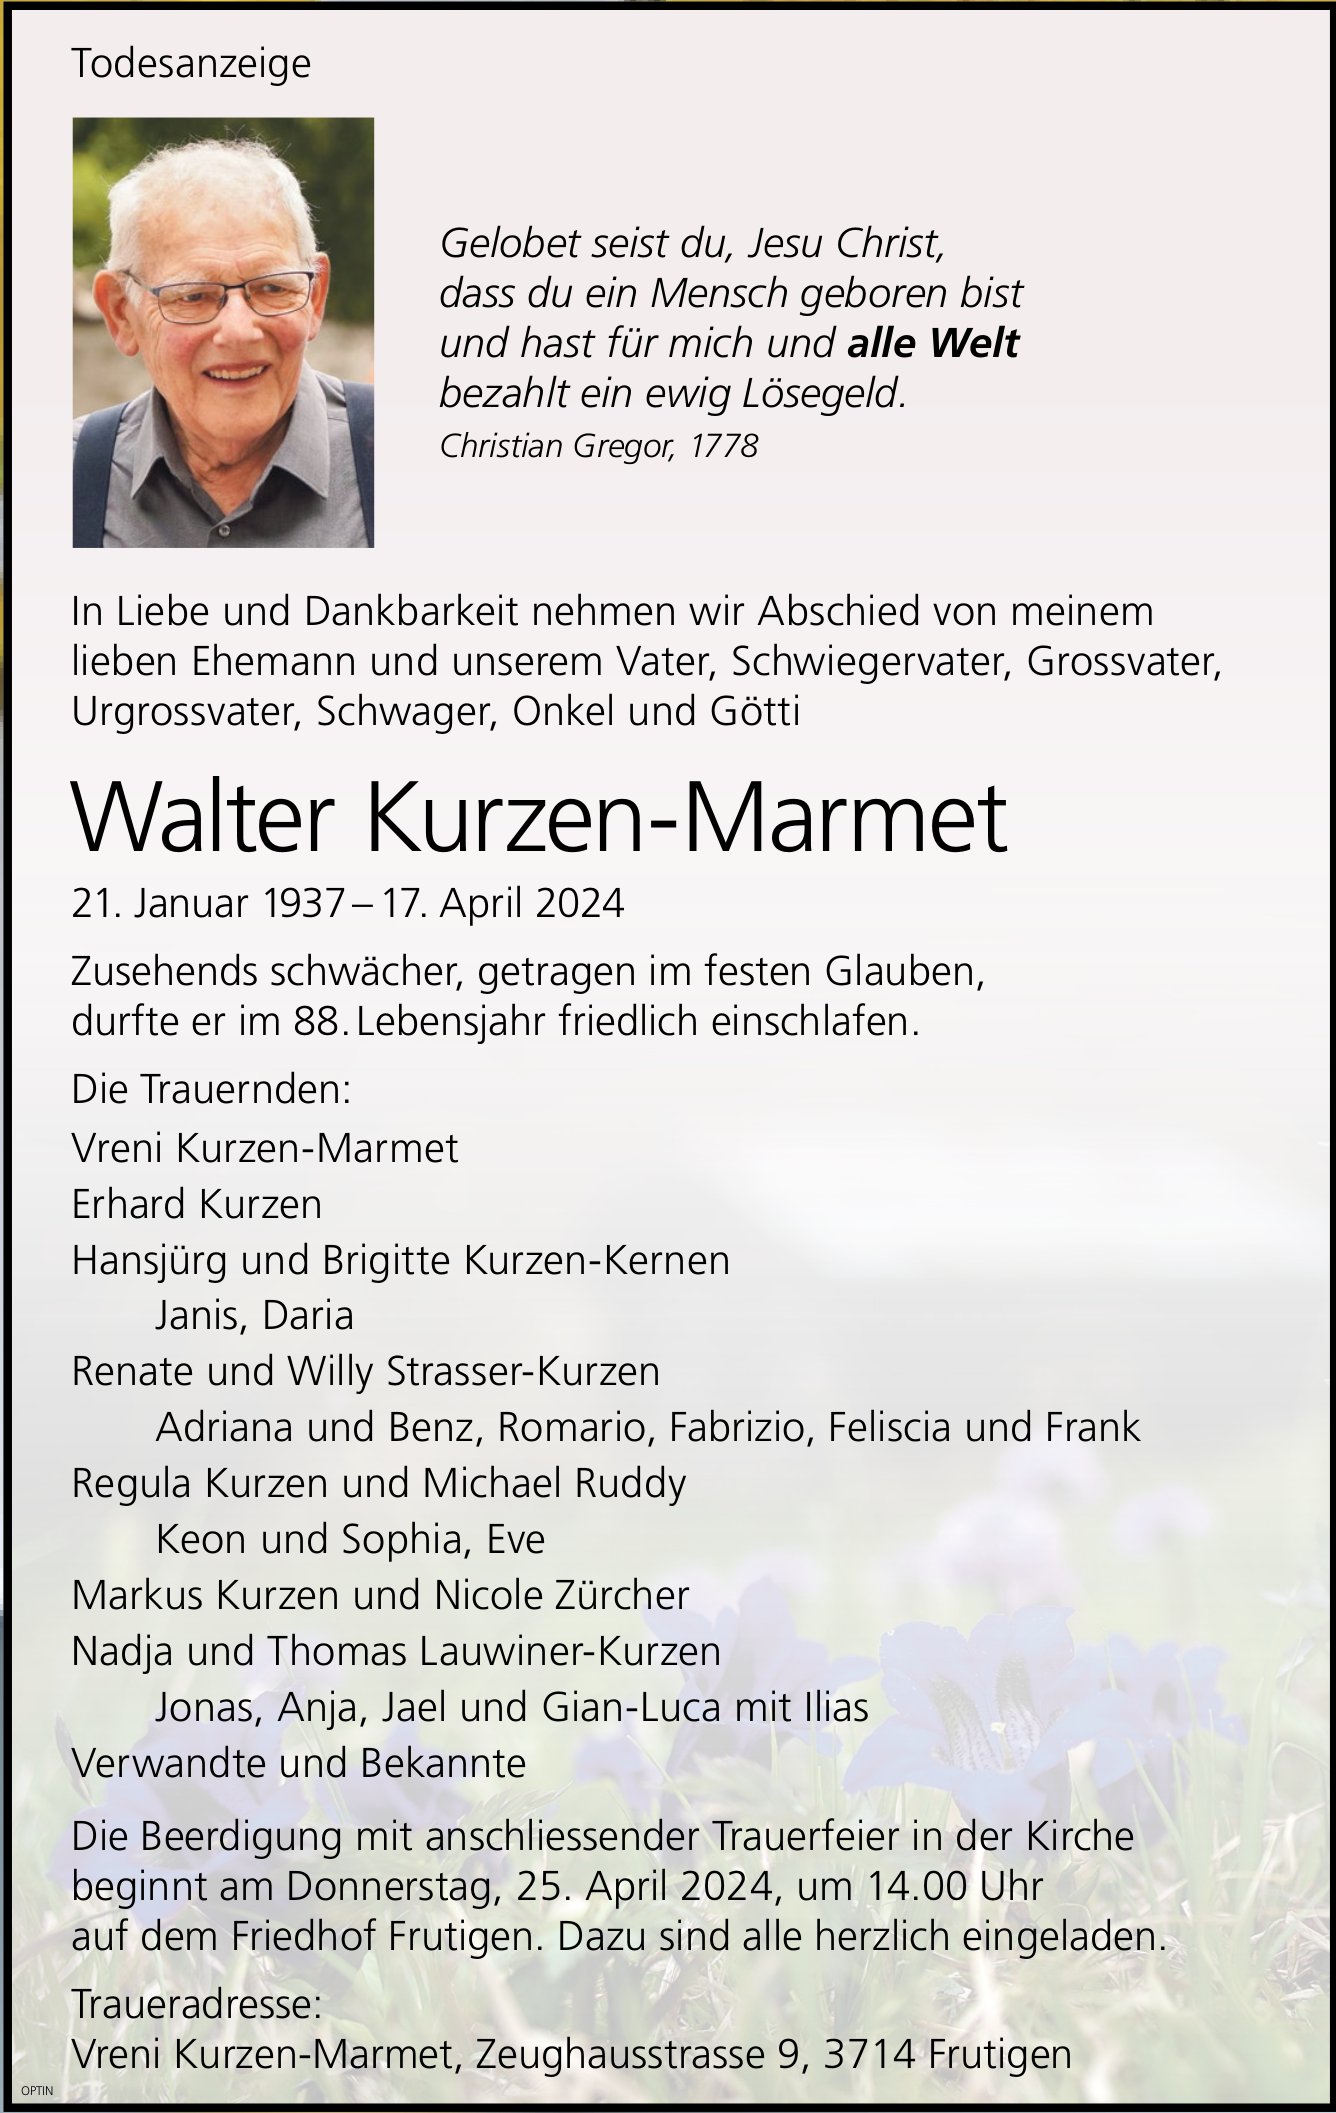 Walter Kurzen-Marmet, April 2024 / TA